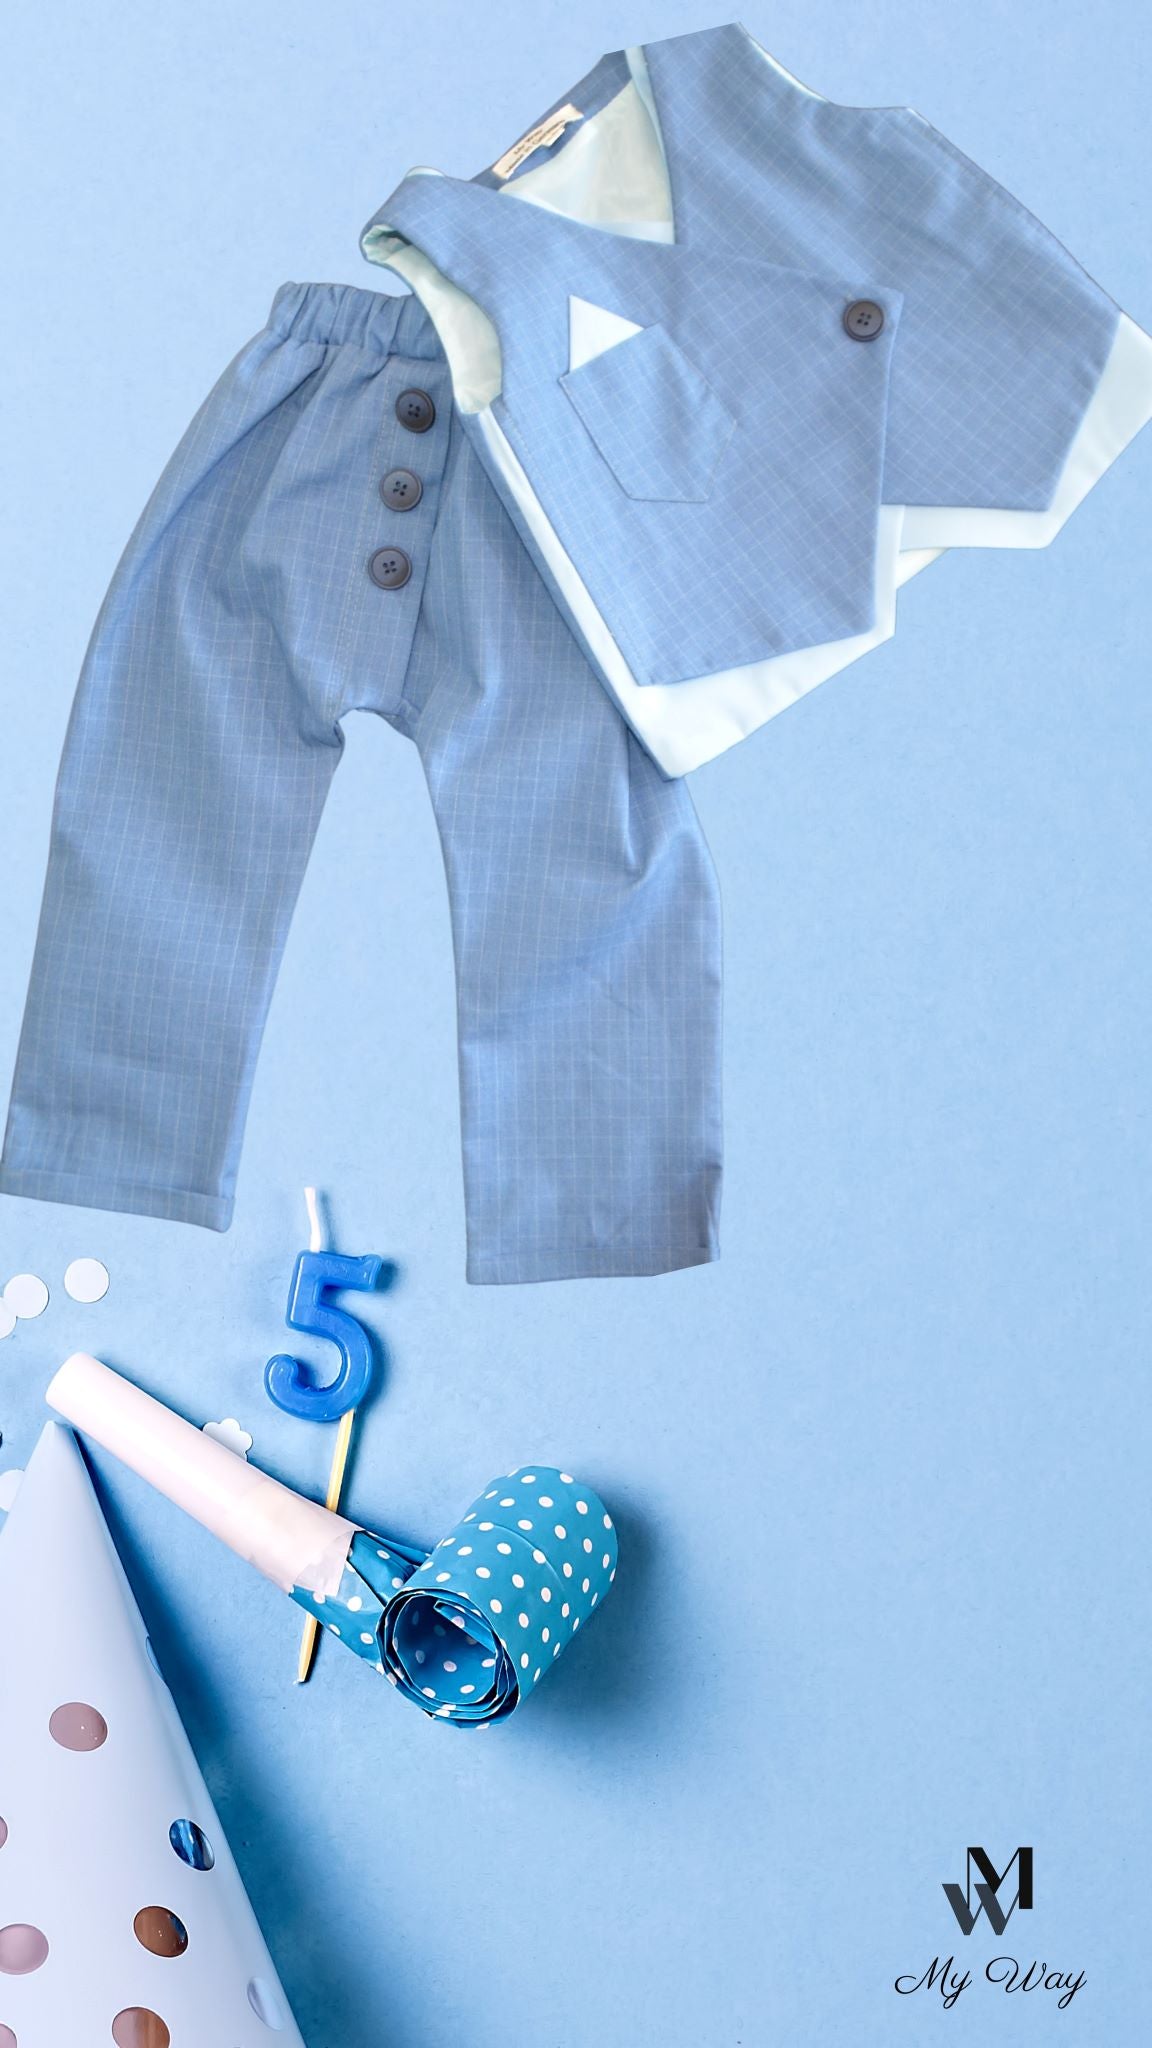 Hochwertige Kinderanzüge von My Way D&A Blau Kinder-Anzüge online kaufen Anzug für Jungen mit Weste- Blau zu günstigen Preisen